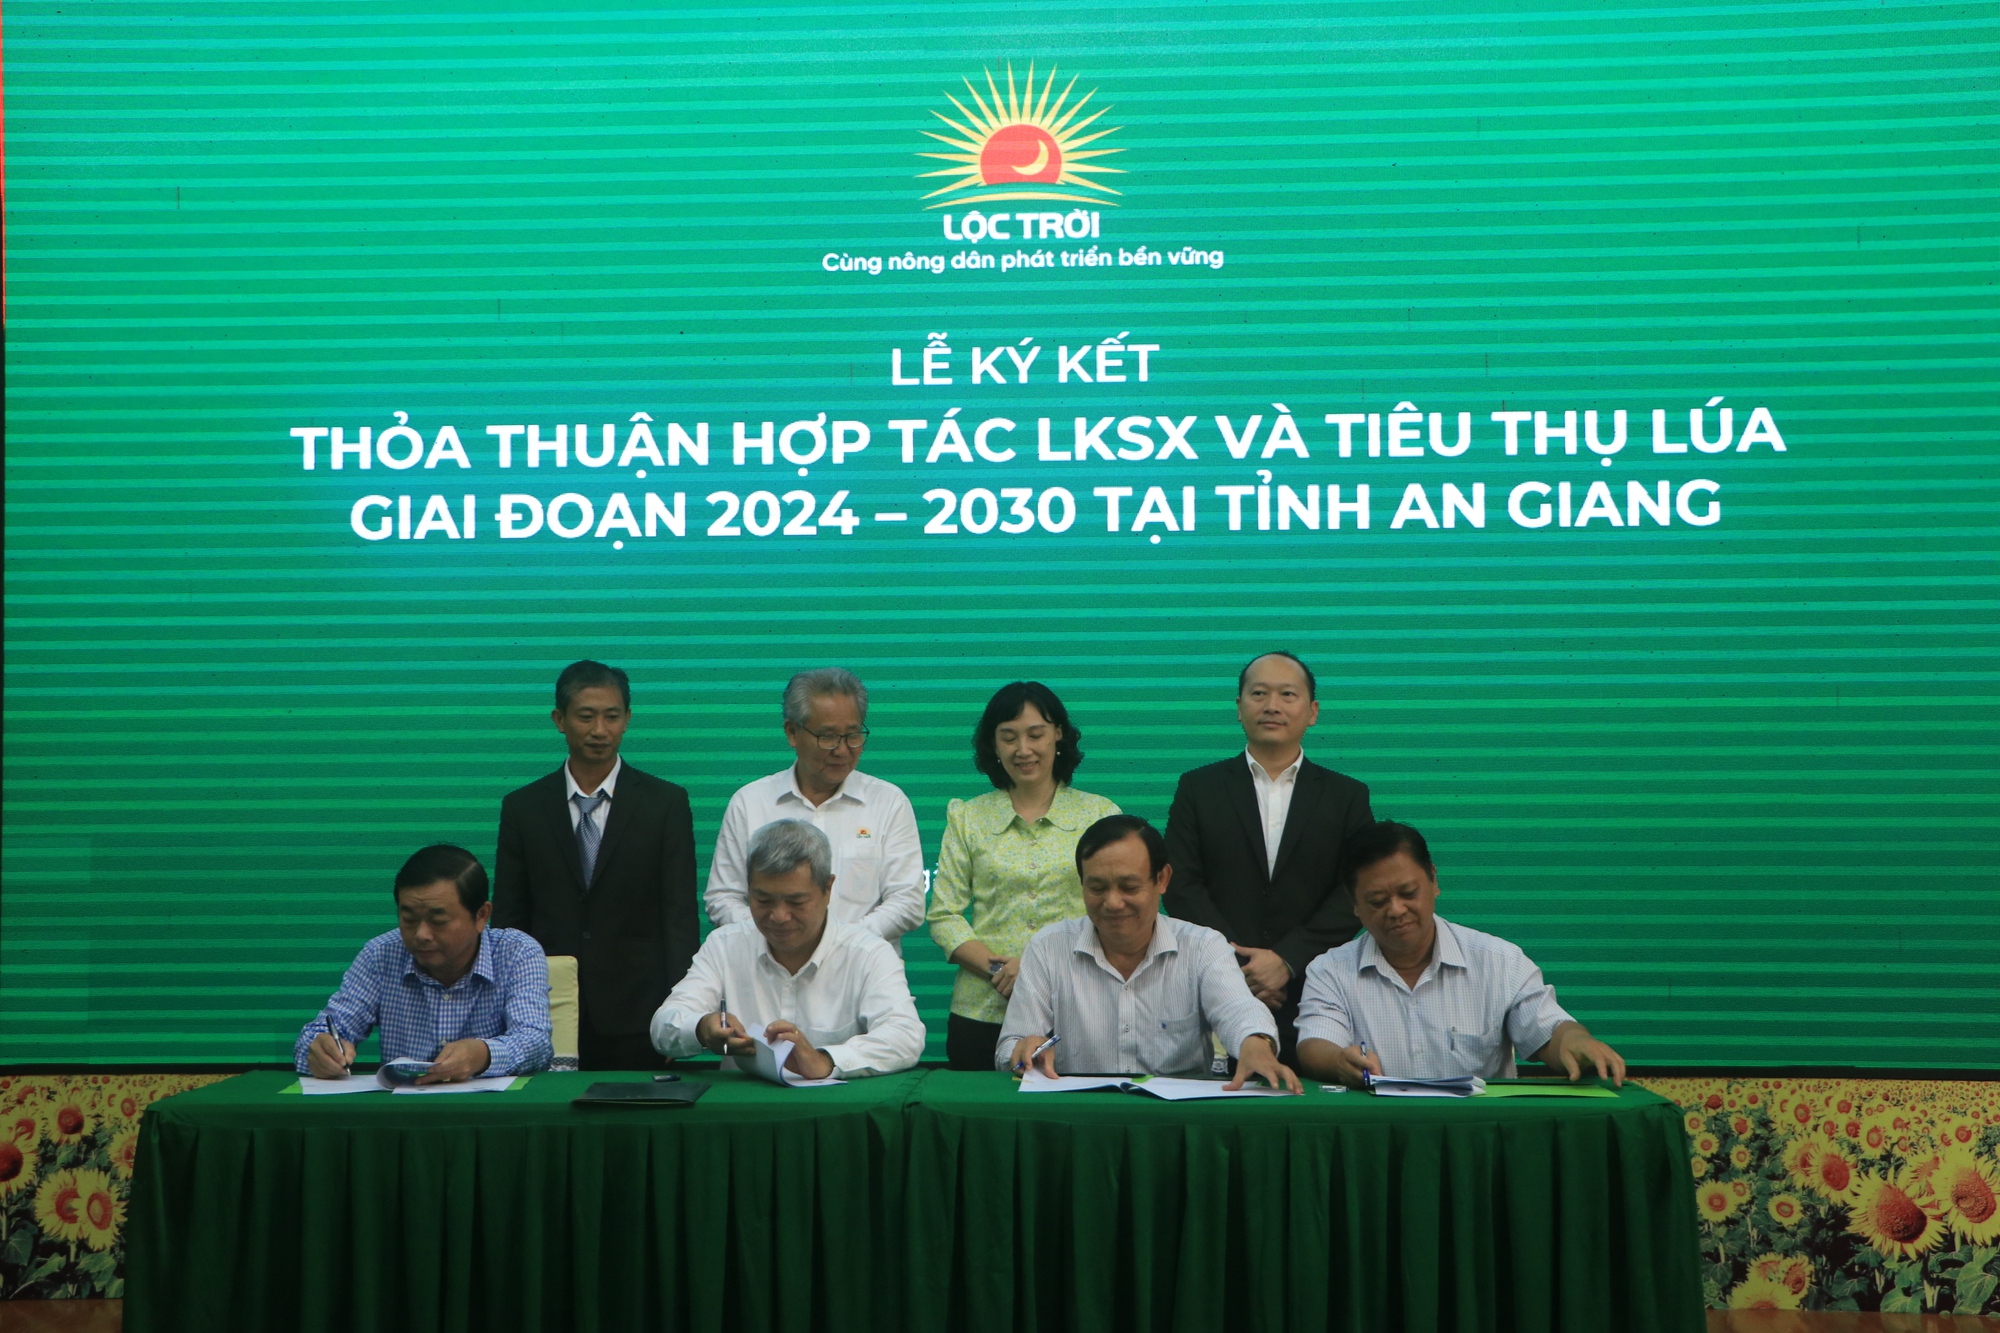 Hội Nông dân tỉnh An Giang ký kết hợp tác với doanh nghiệp, đặt mục tiêu thành lập 200 chi hội nông dân - Ảnh 4.